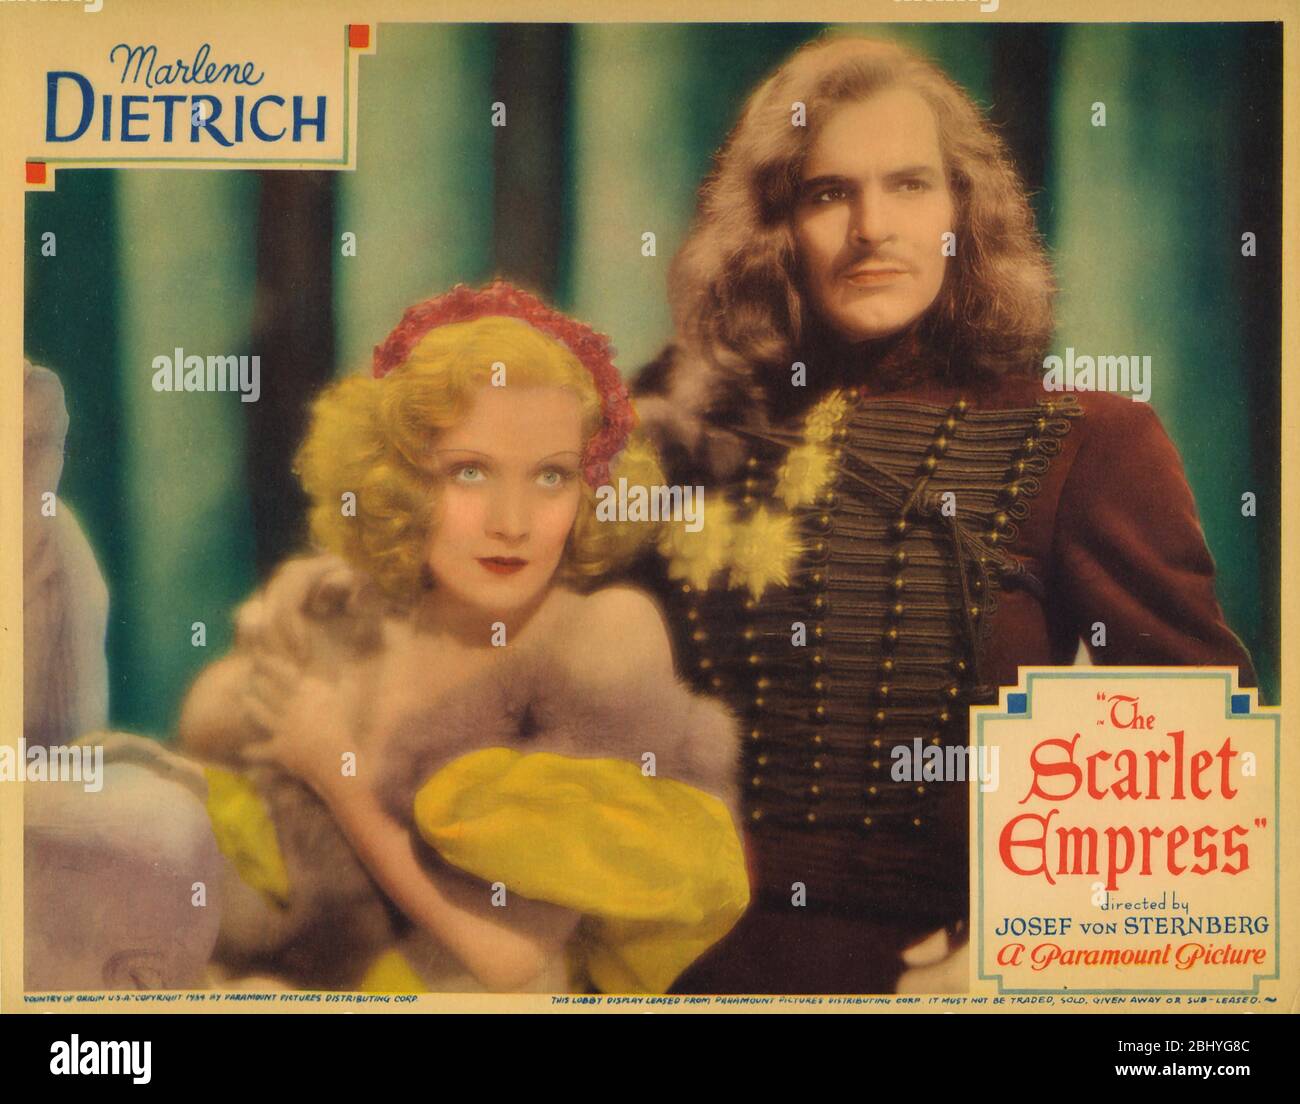 La emperatriz de los escarabajos año: 1934 - USA Director: Josef von Sternberg Marlene Dietrich, John Lodge Lobbycard Foto de stock